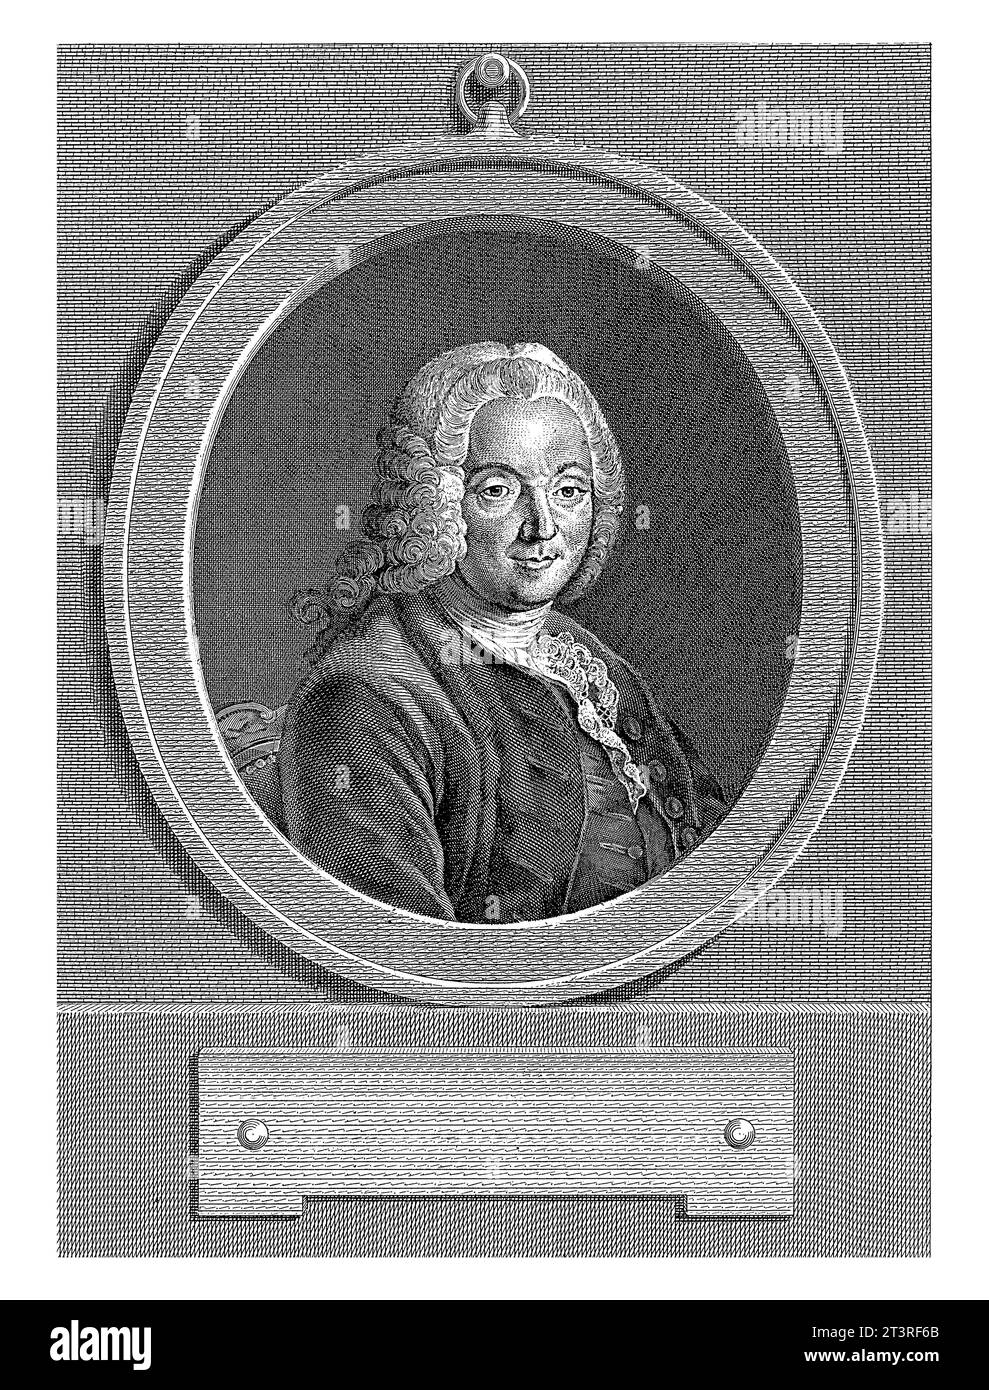 Portret van Charles-Jean-Francois Henault, Francois Voyez, nach Gabriel Jacques de Saint-Aubin, 1756 - 1805 Stockfoto